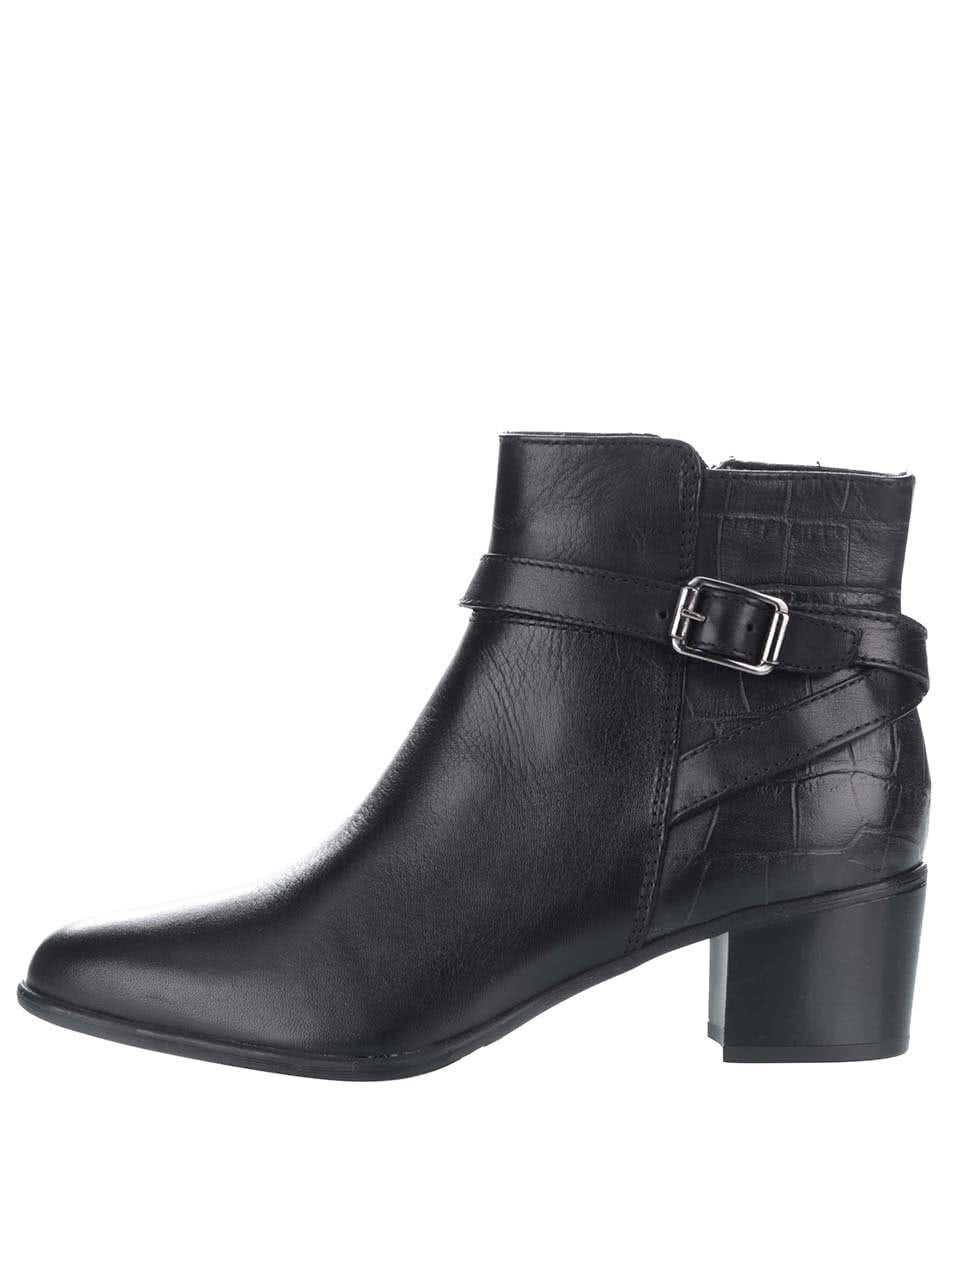 Černé kožené kotníkové boty s přezkou ve stříbrné barvě Tamaris